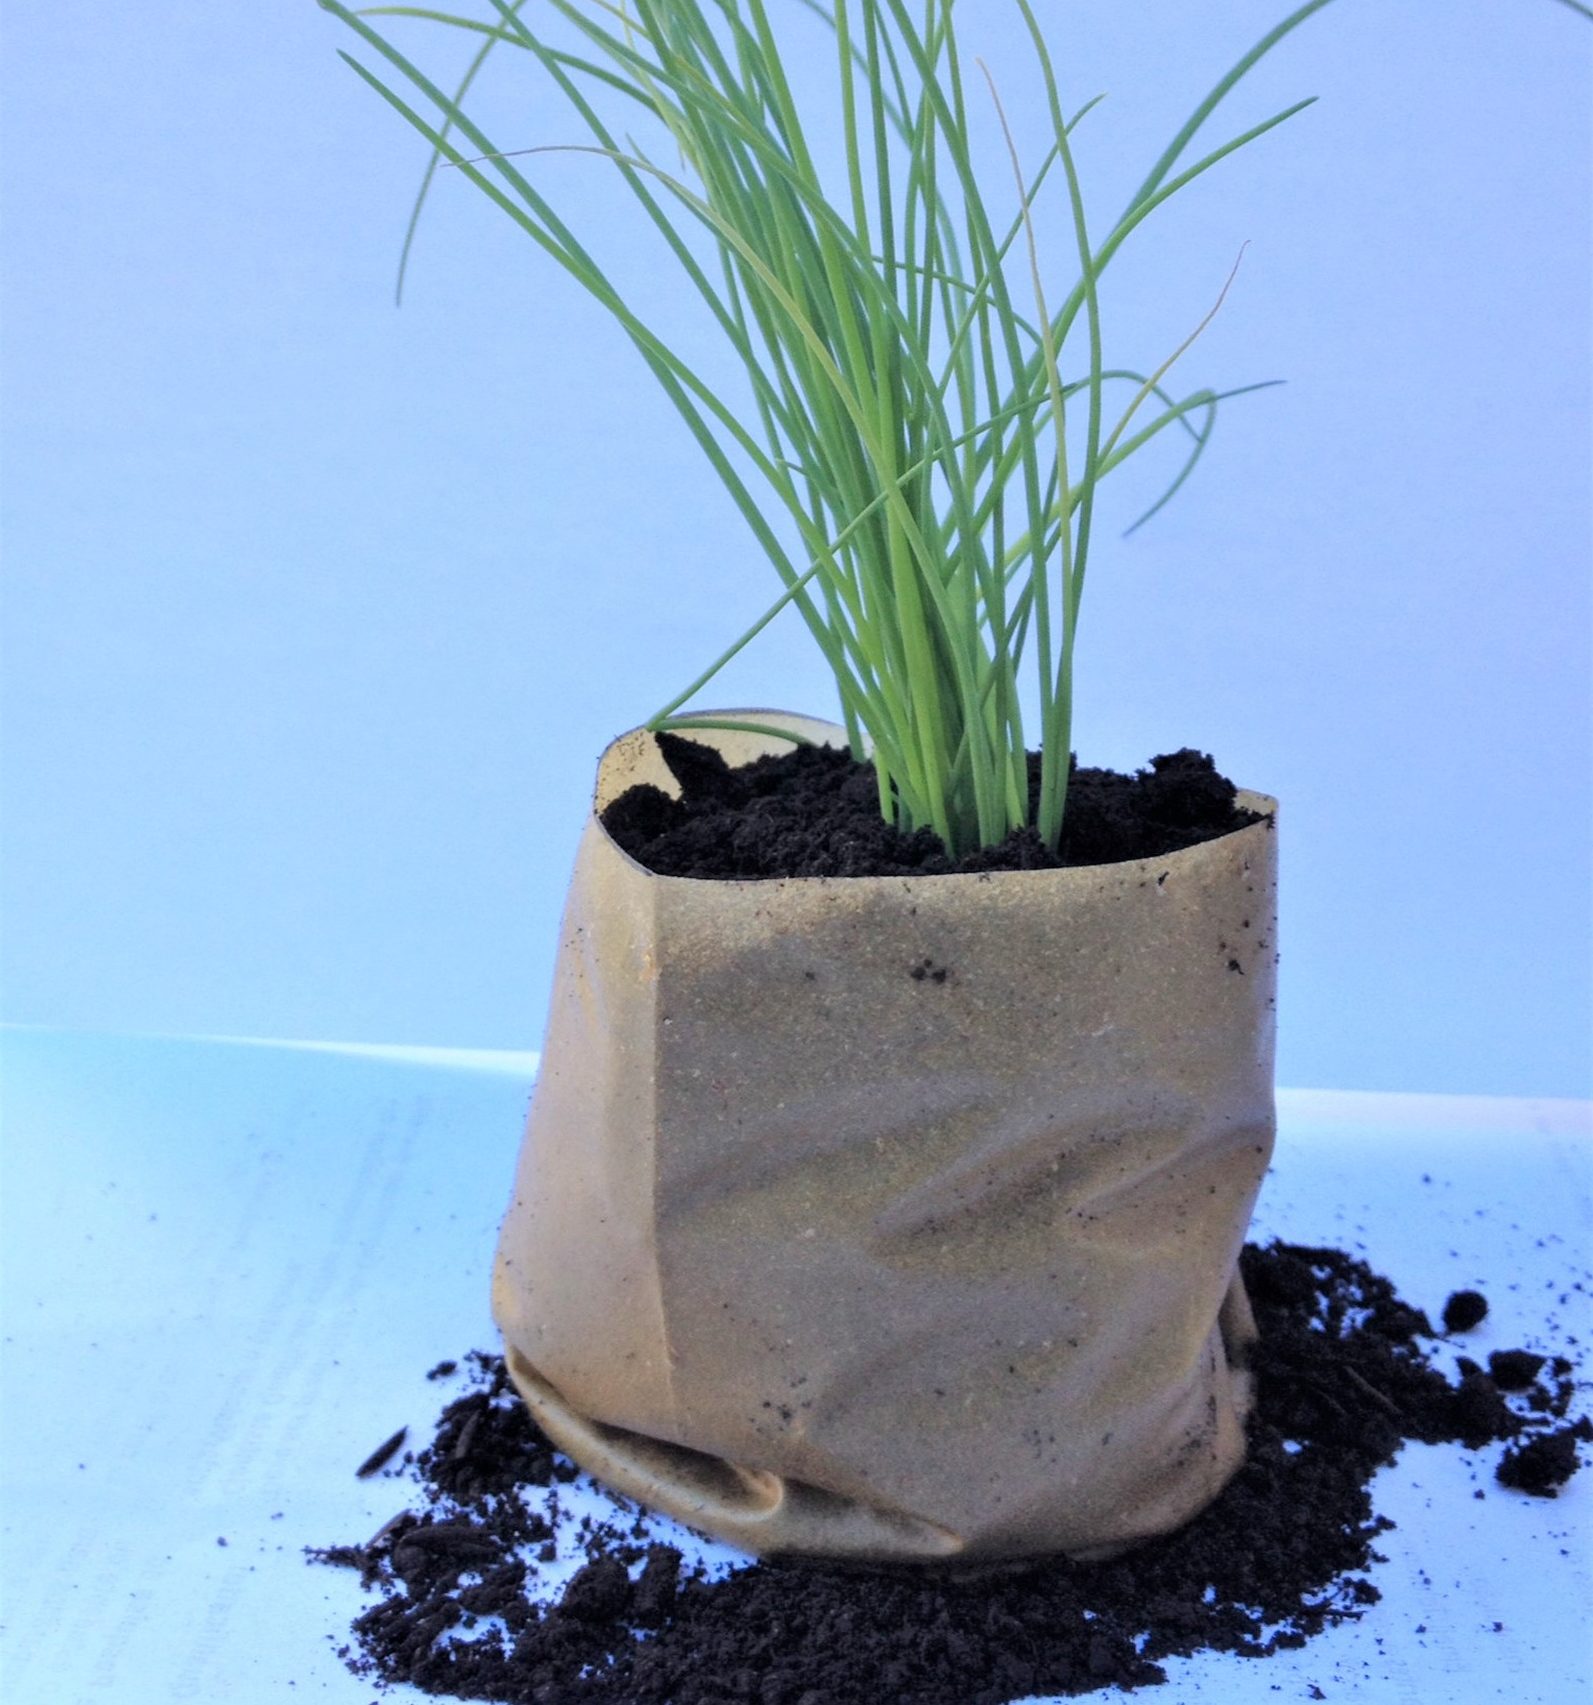 Bioplástico de maracujá embala mudas e pode ser plantado. Foto Divulgação